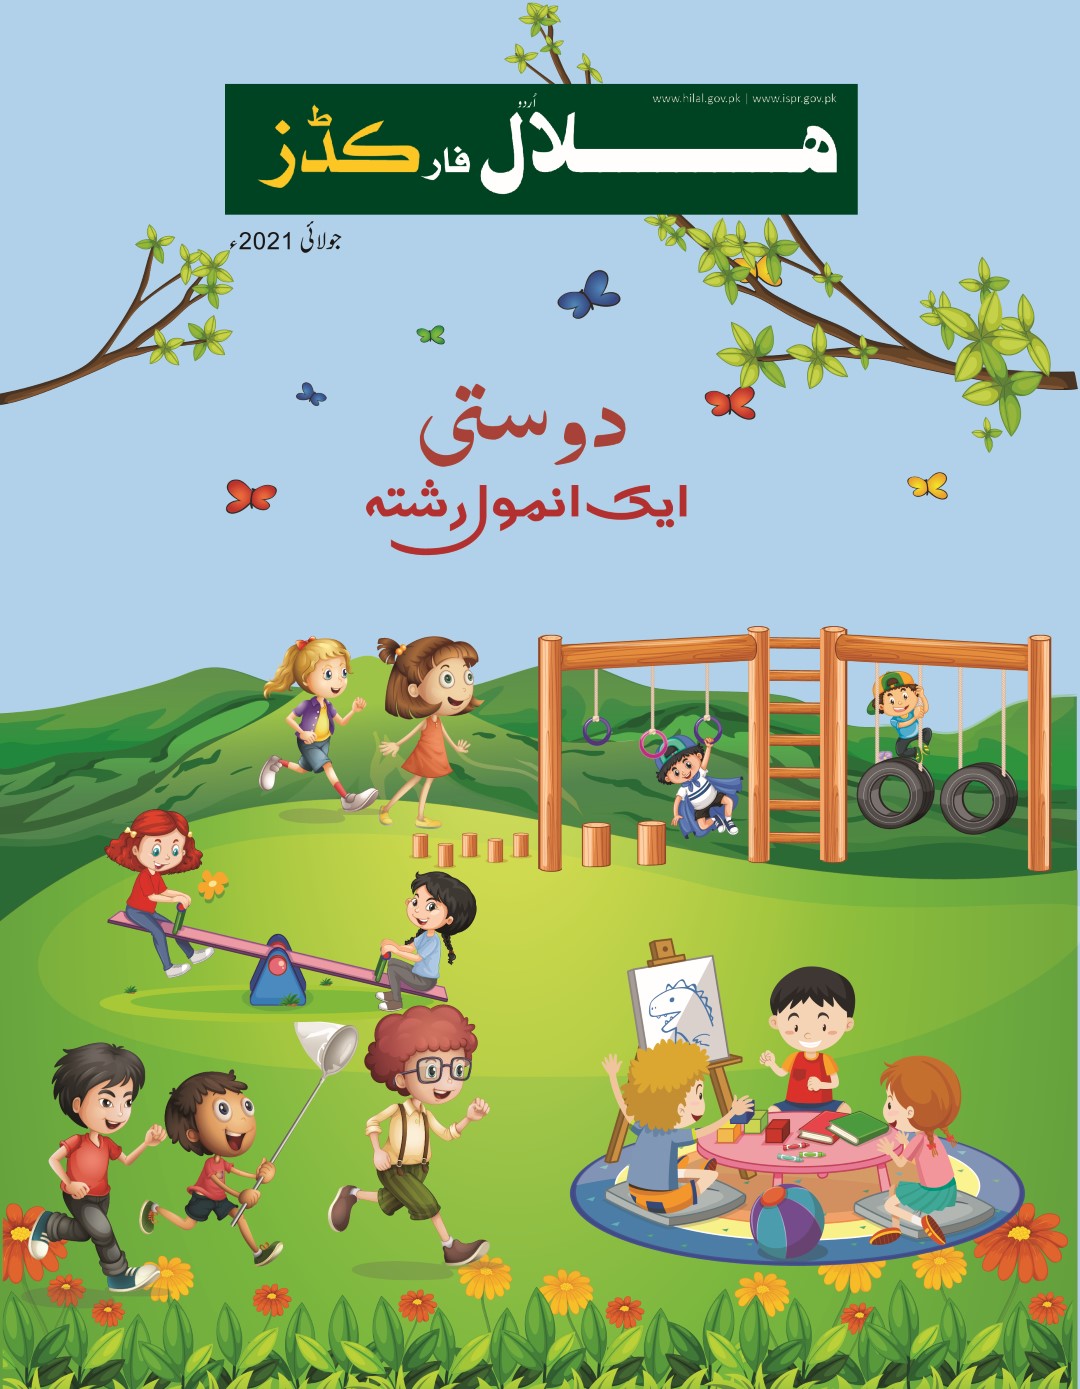 Hilal for Kids Urdu July 2021